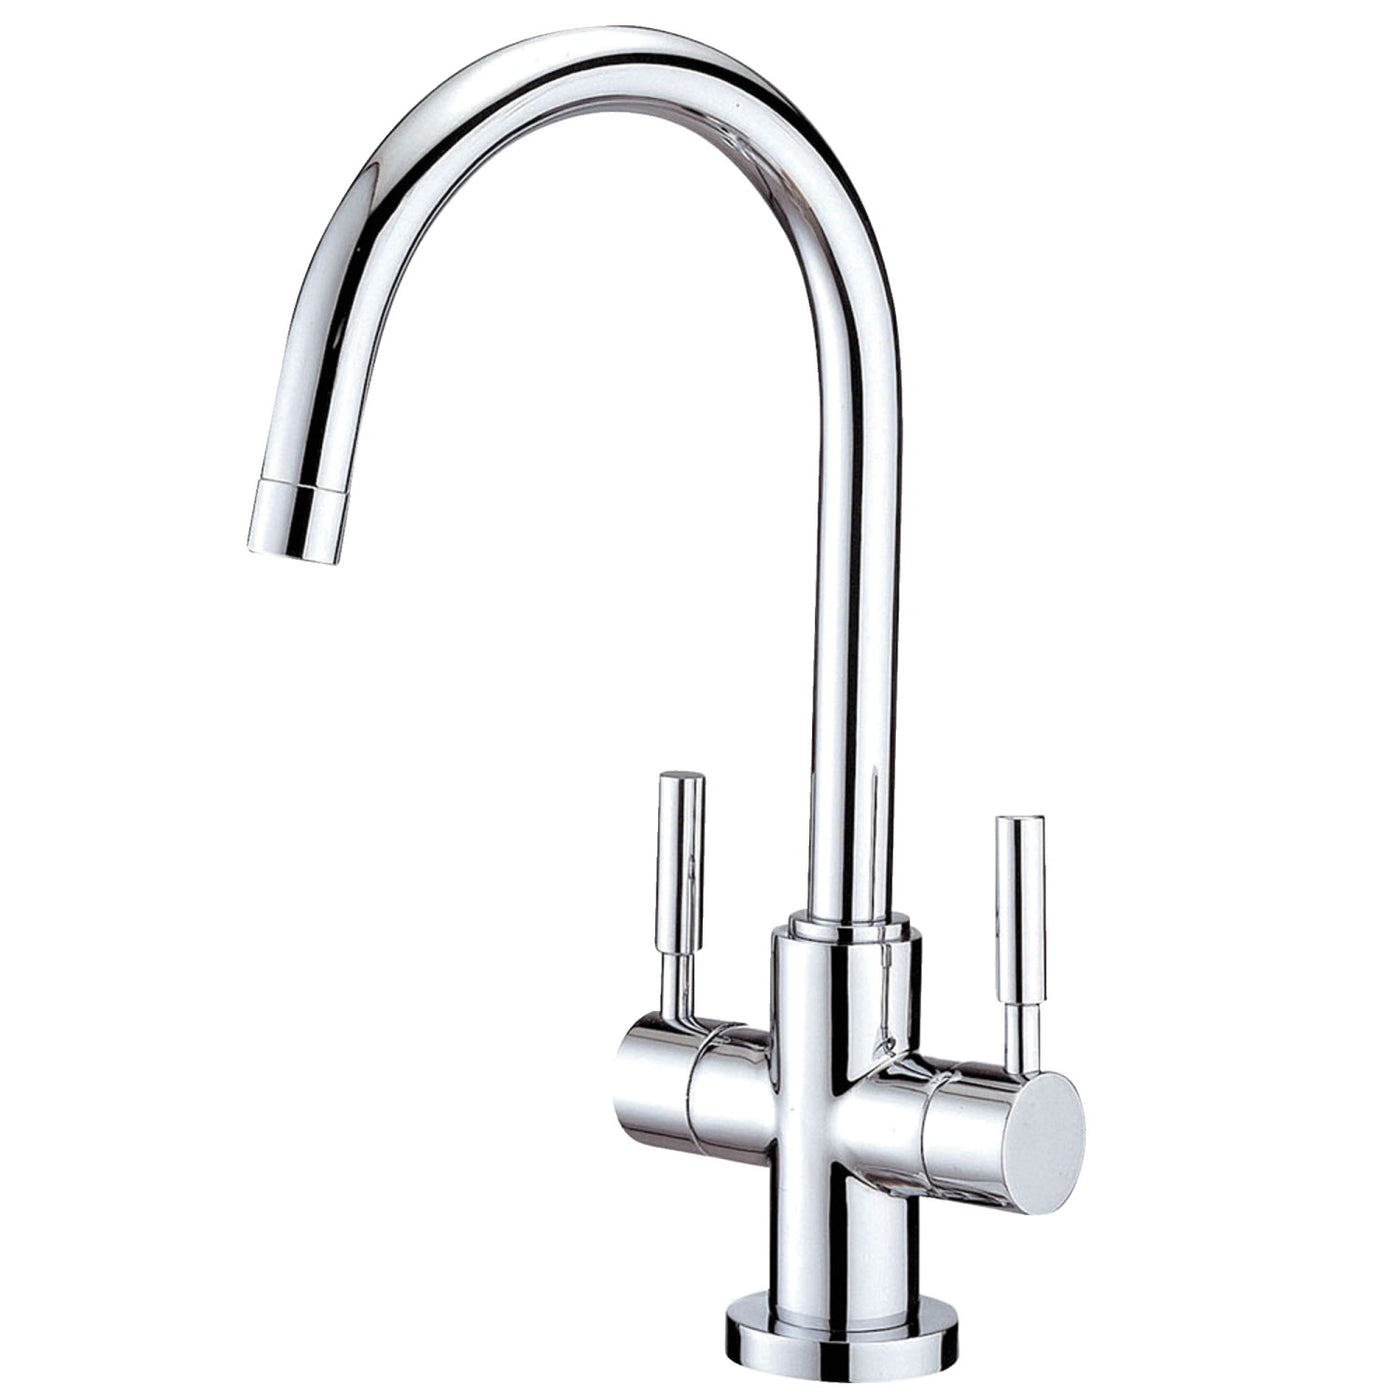 Elements of Design ES8291DL Vessel Sink Faucet, Polished Chrome